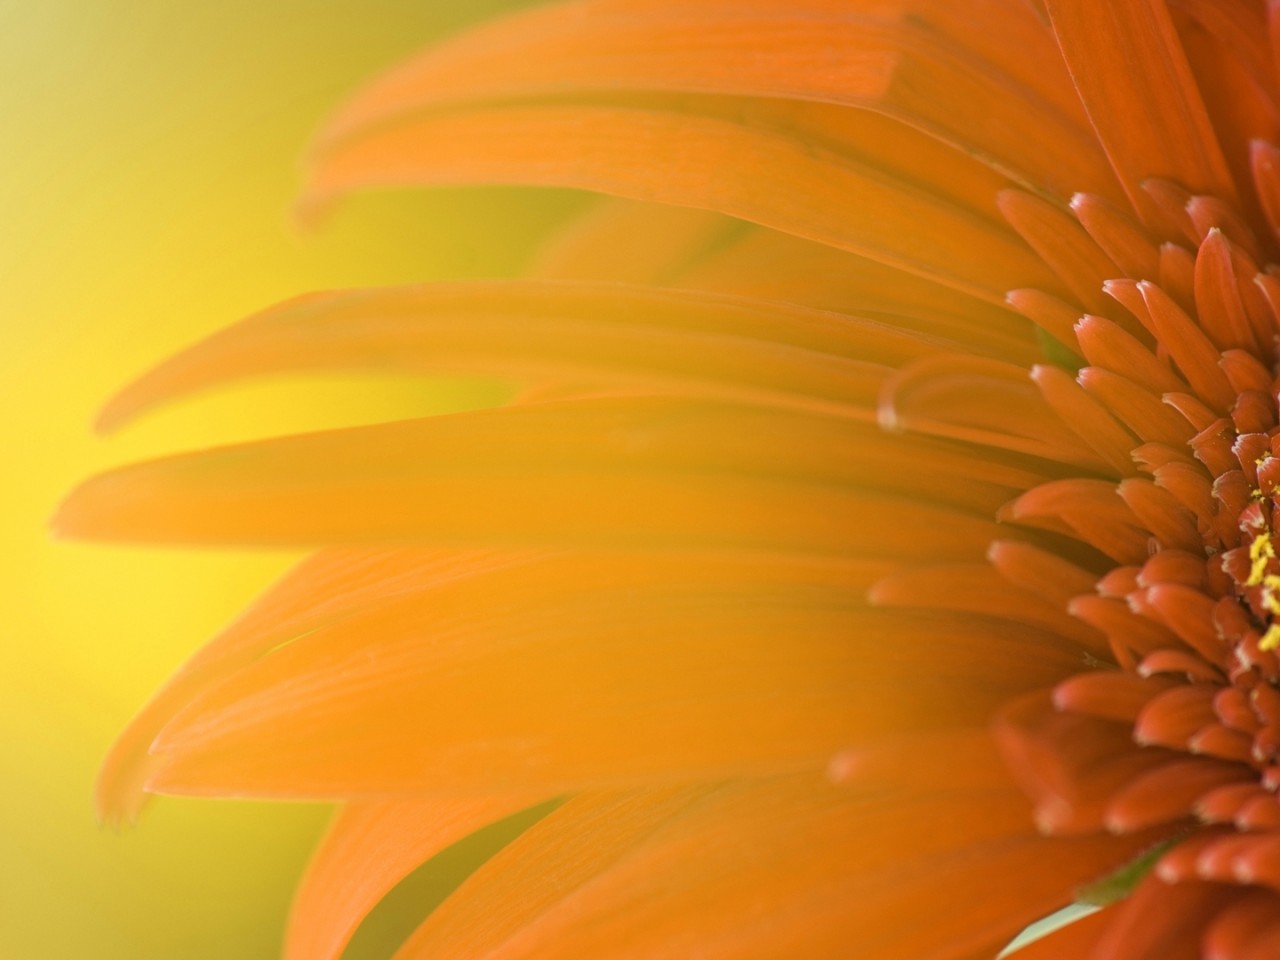 Windows 8 Flower Wallpaper - High Definition, High Resolution HD